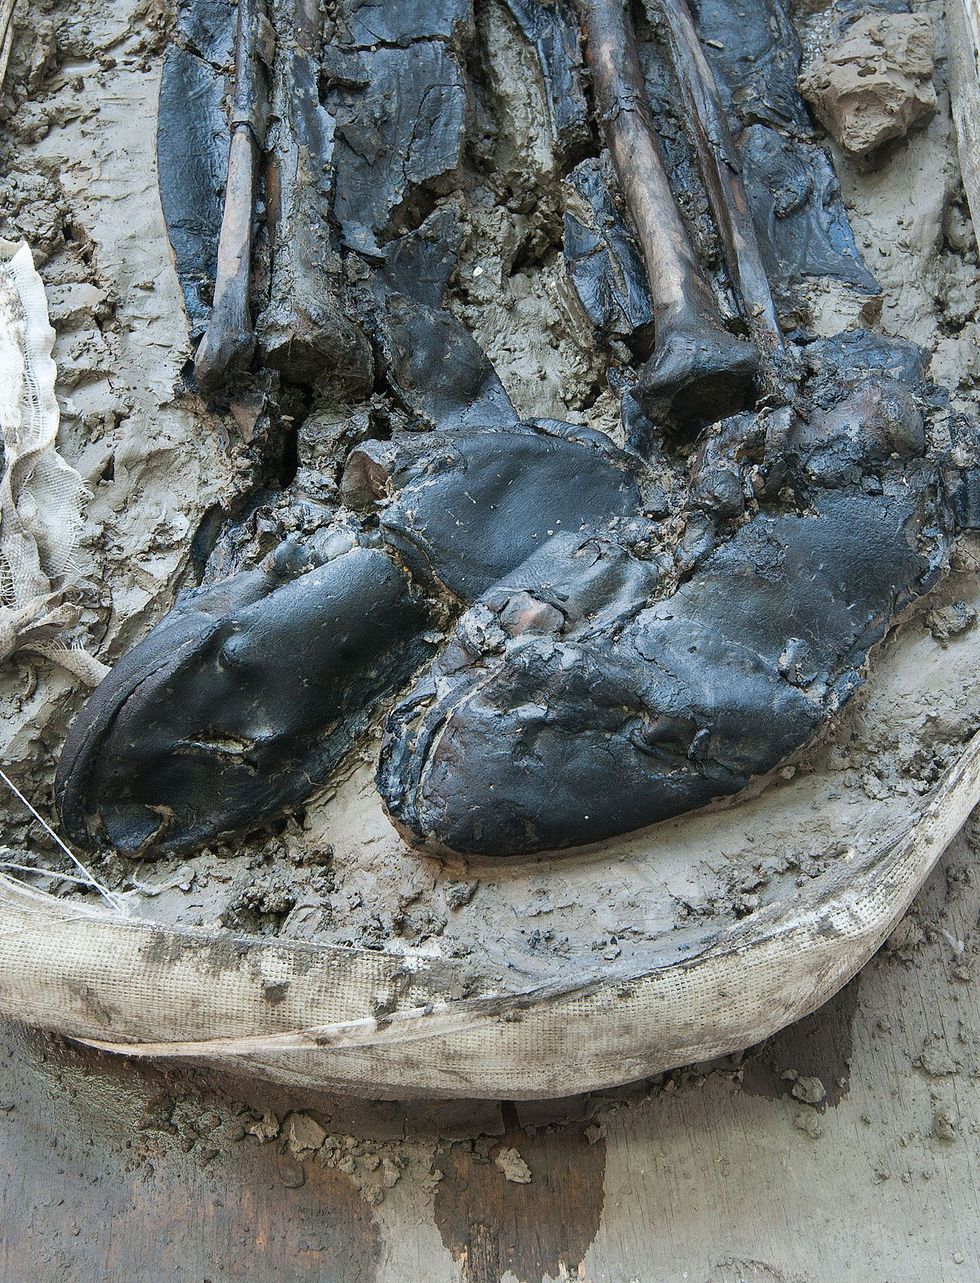 Volgens deskundigen dateren de leren laarzen van de man uit het einde van de vijftiende of begin van de zestiende eeuw